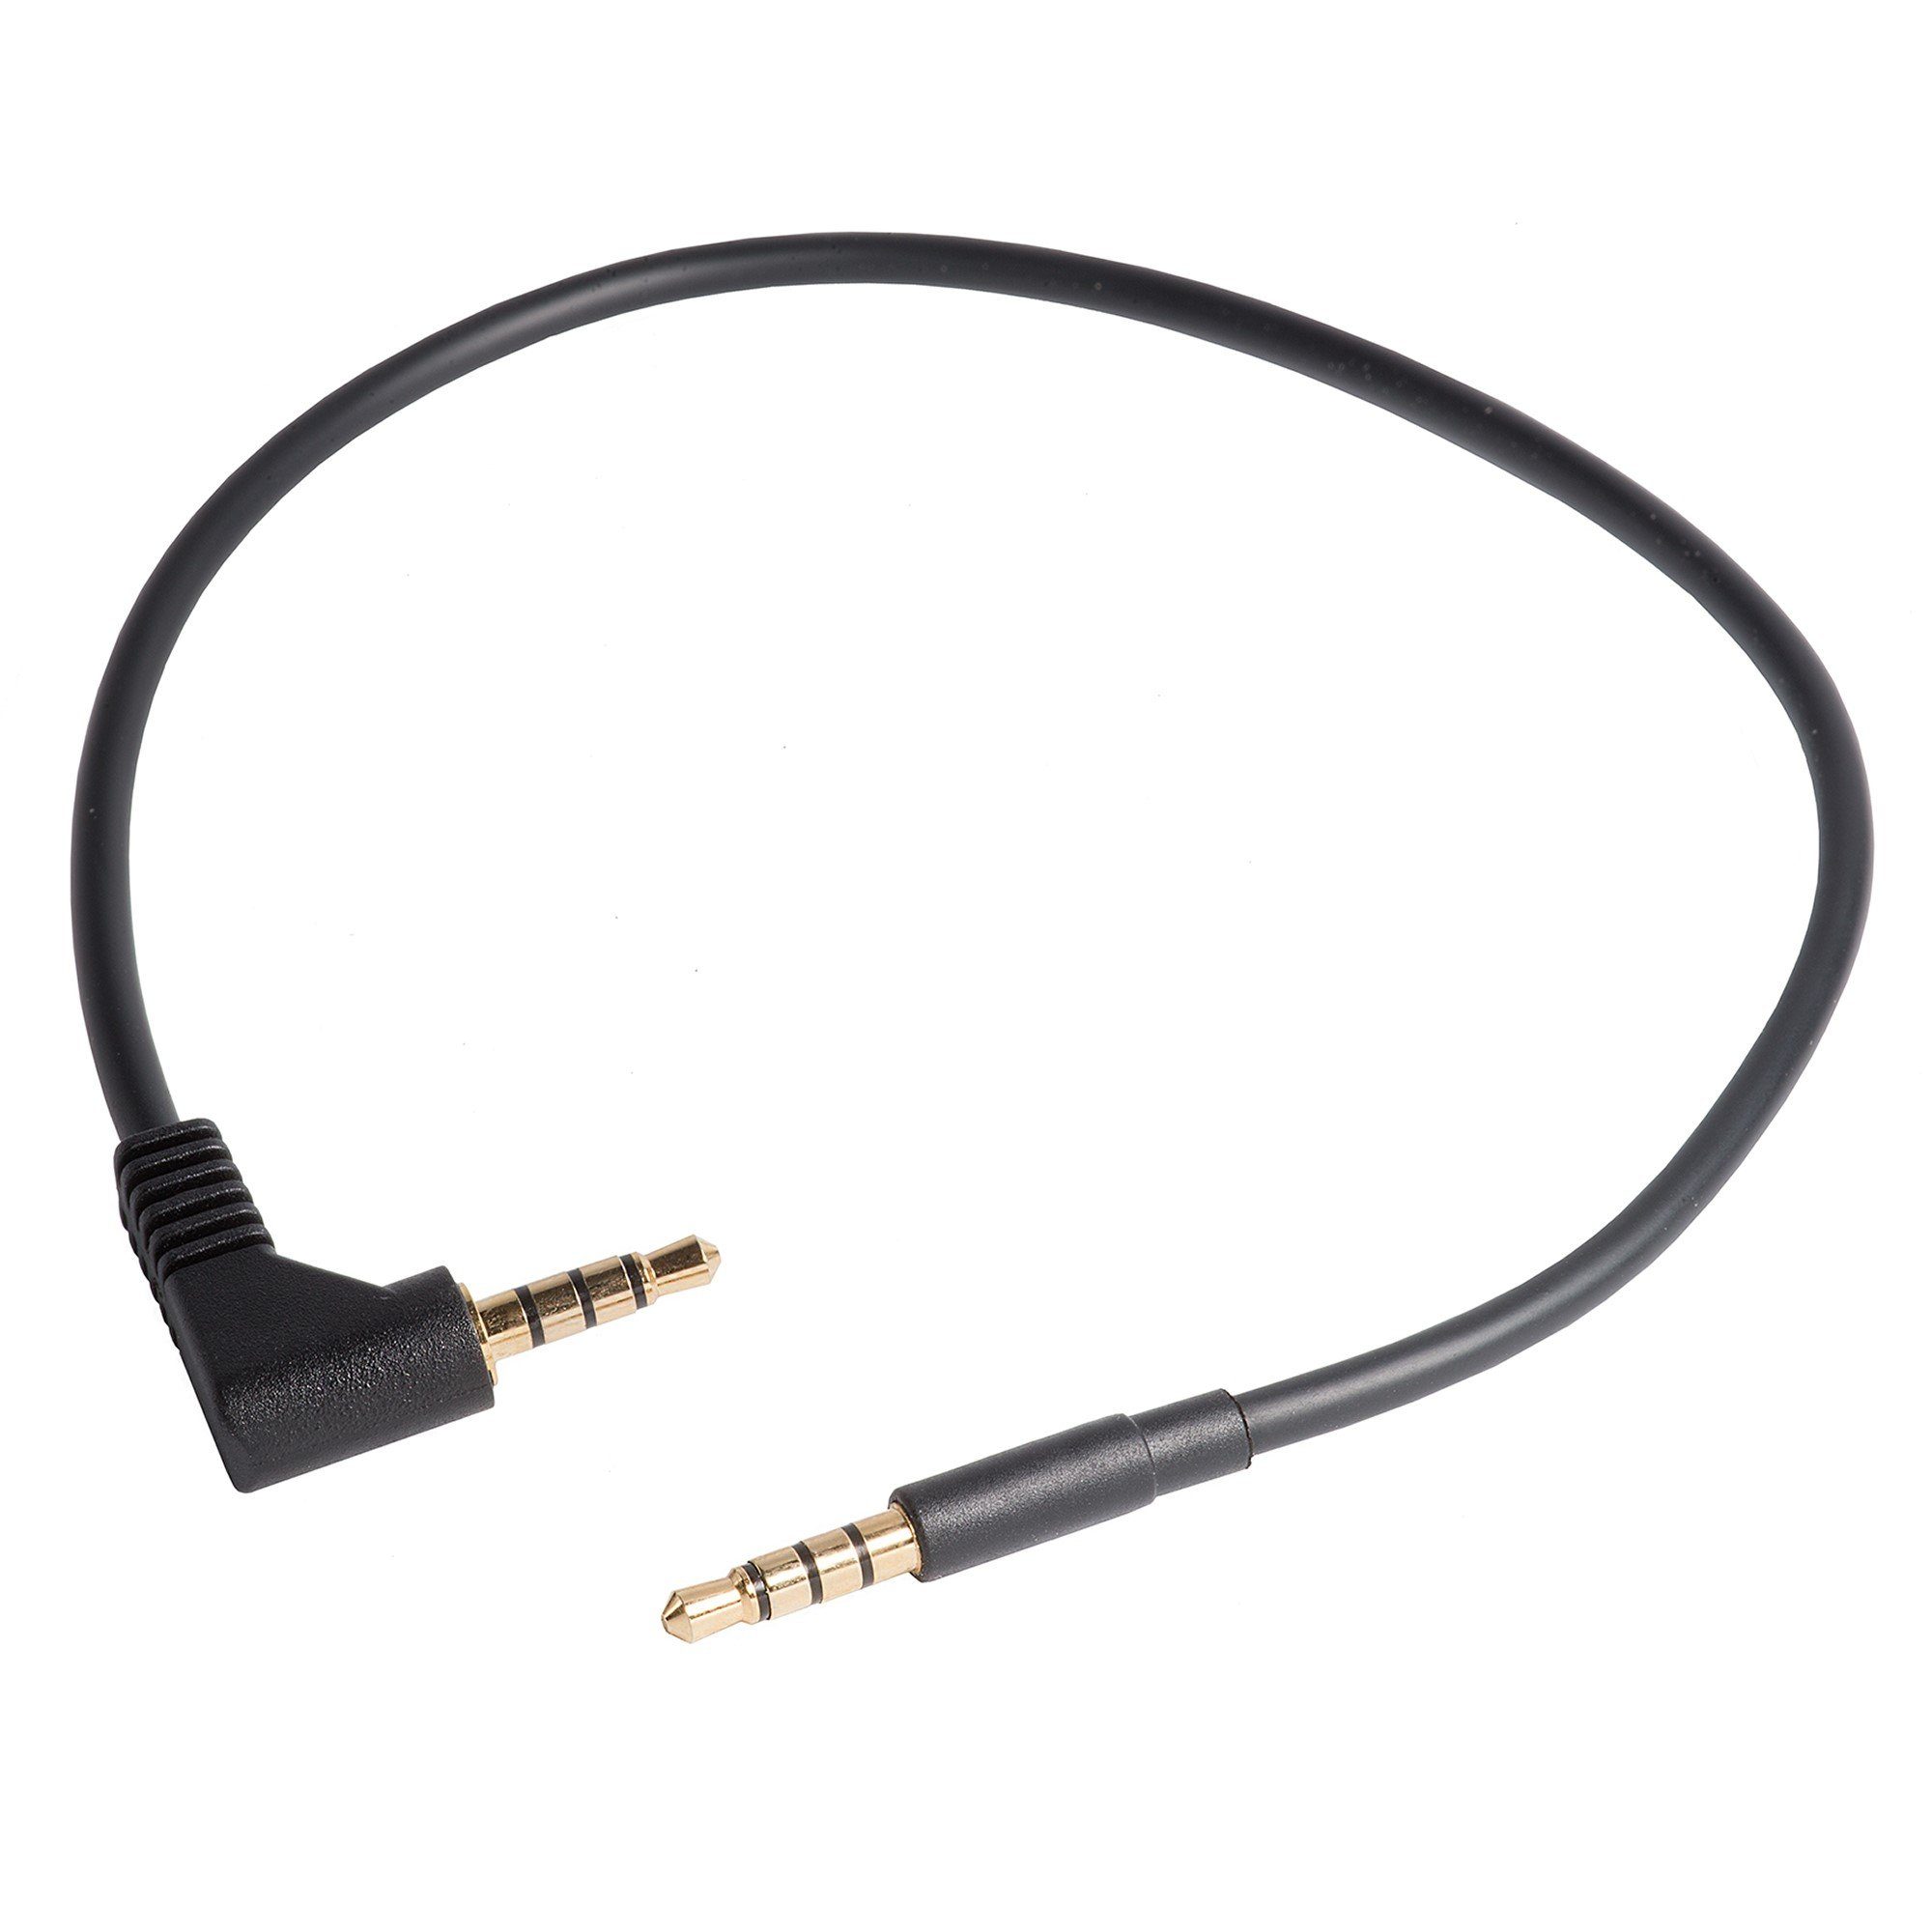 shortix kurzes Premium Audio-Kabel. 3,5-mm-Klinke. Stecker gewinkelt -  Stecker gerade. Stereo. AUX-Kabel. 30cm. Audio-Kabel, 3,5-mm-Klinke,  3,5-mm-Klinke, kurz